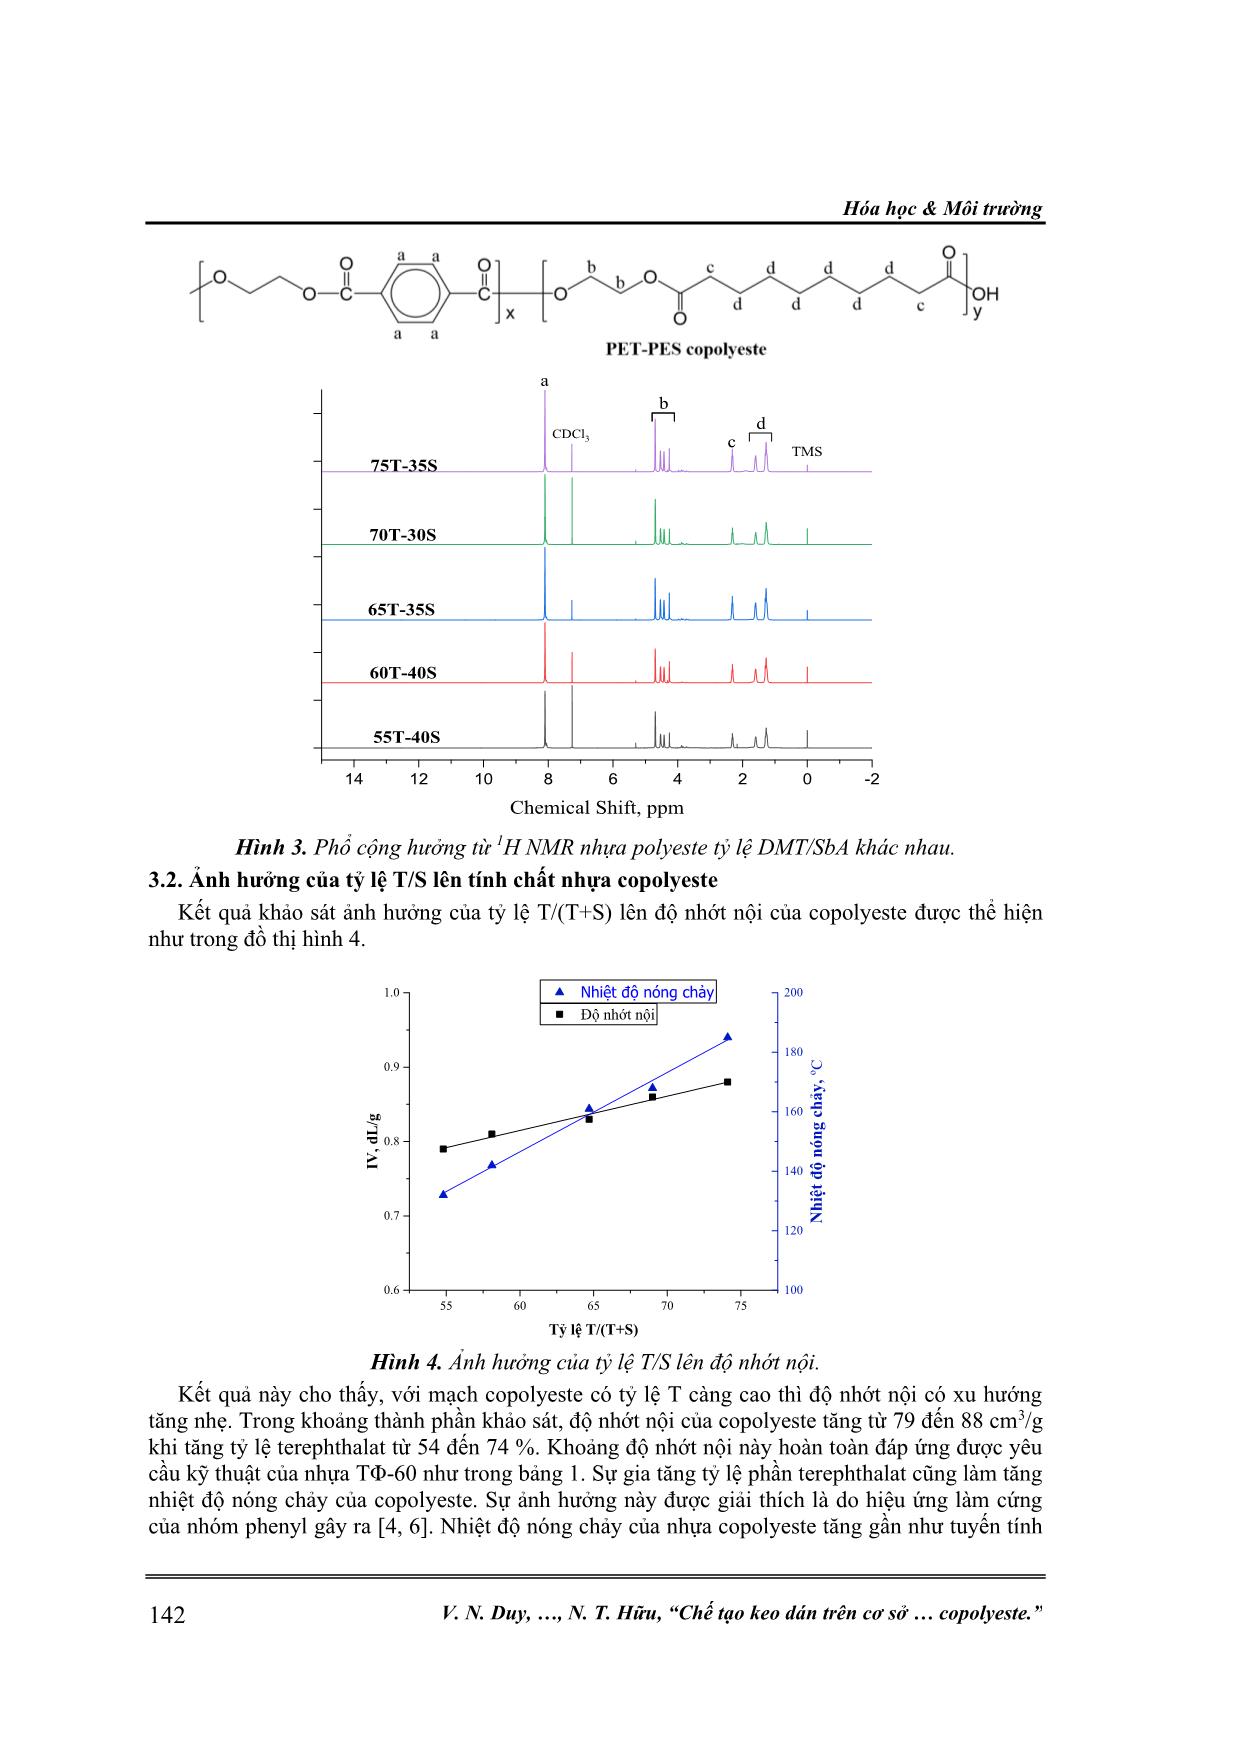 Chế tạo keo dán trên cơ sở poly (ethylen terephthalatco-ethylen sebacat) copolyeste trang 5